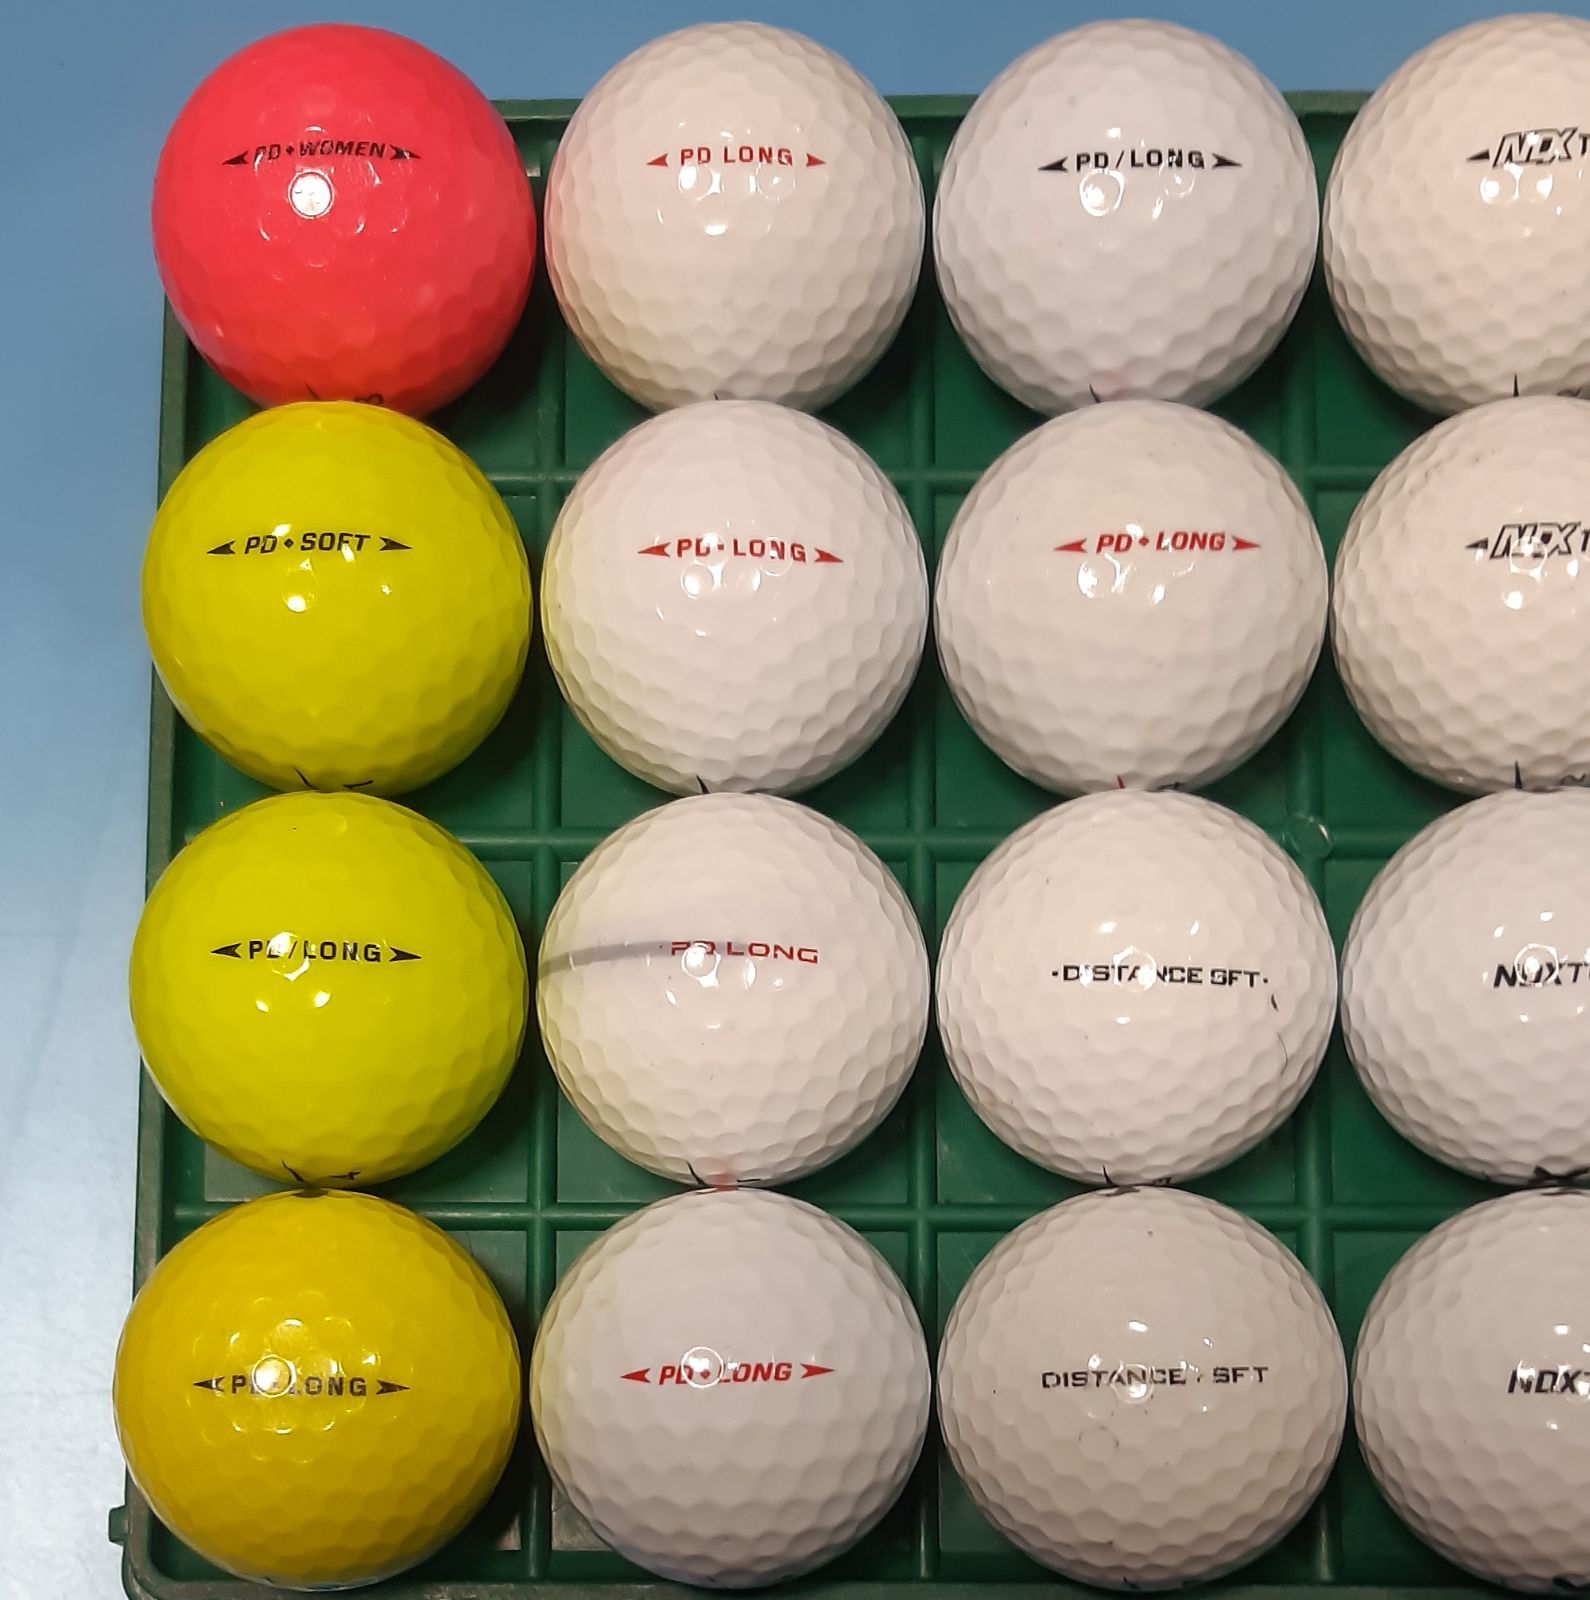 キャンペーンもお見逃しなく NIKE CRUSH ゴルフボール RED BALL 8個 新品未使用 レア